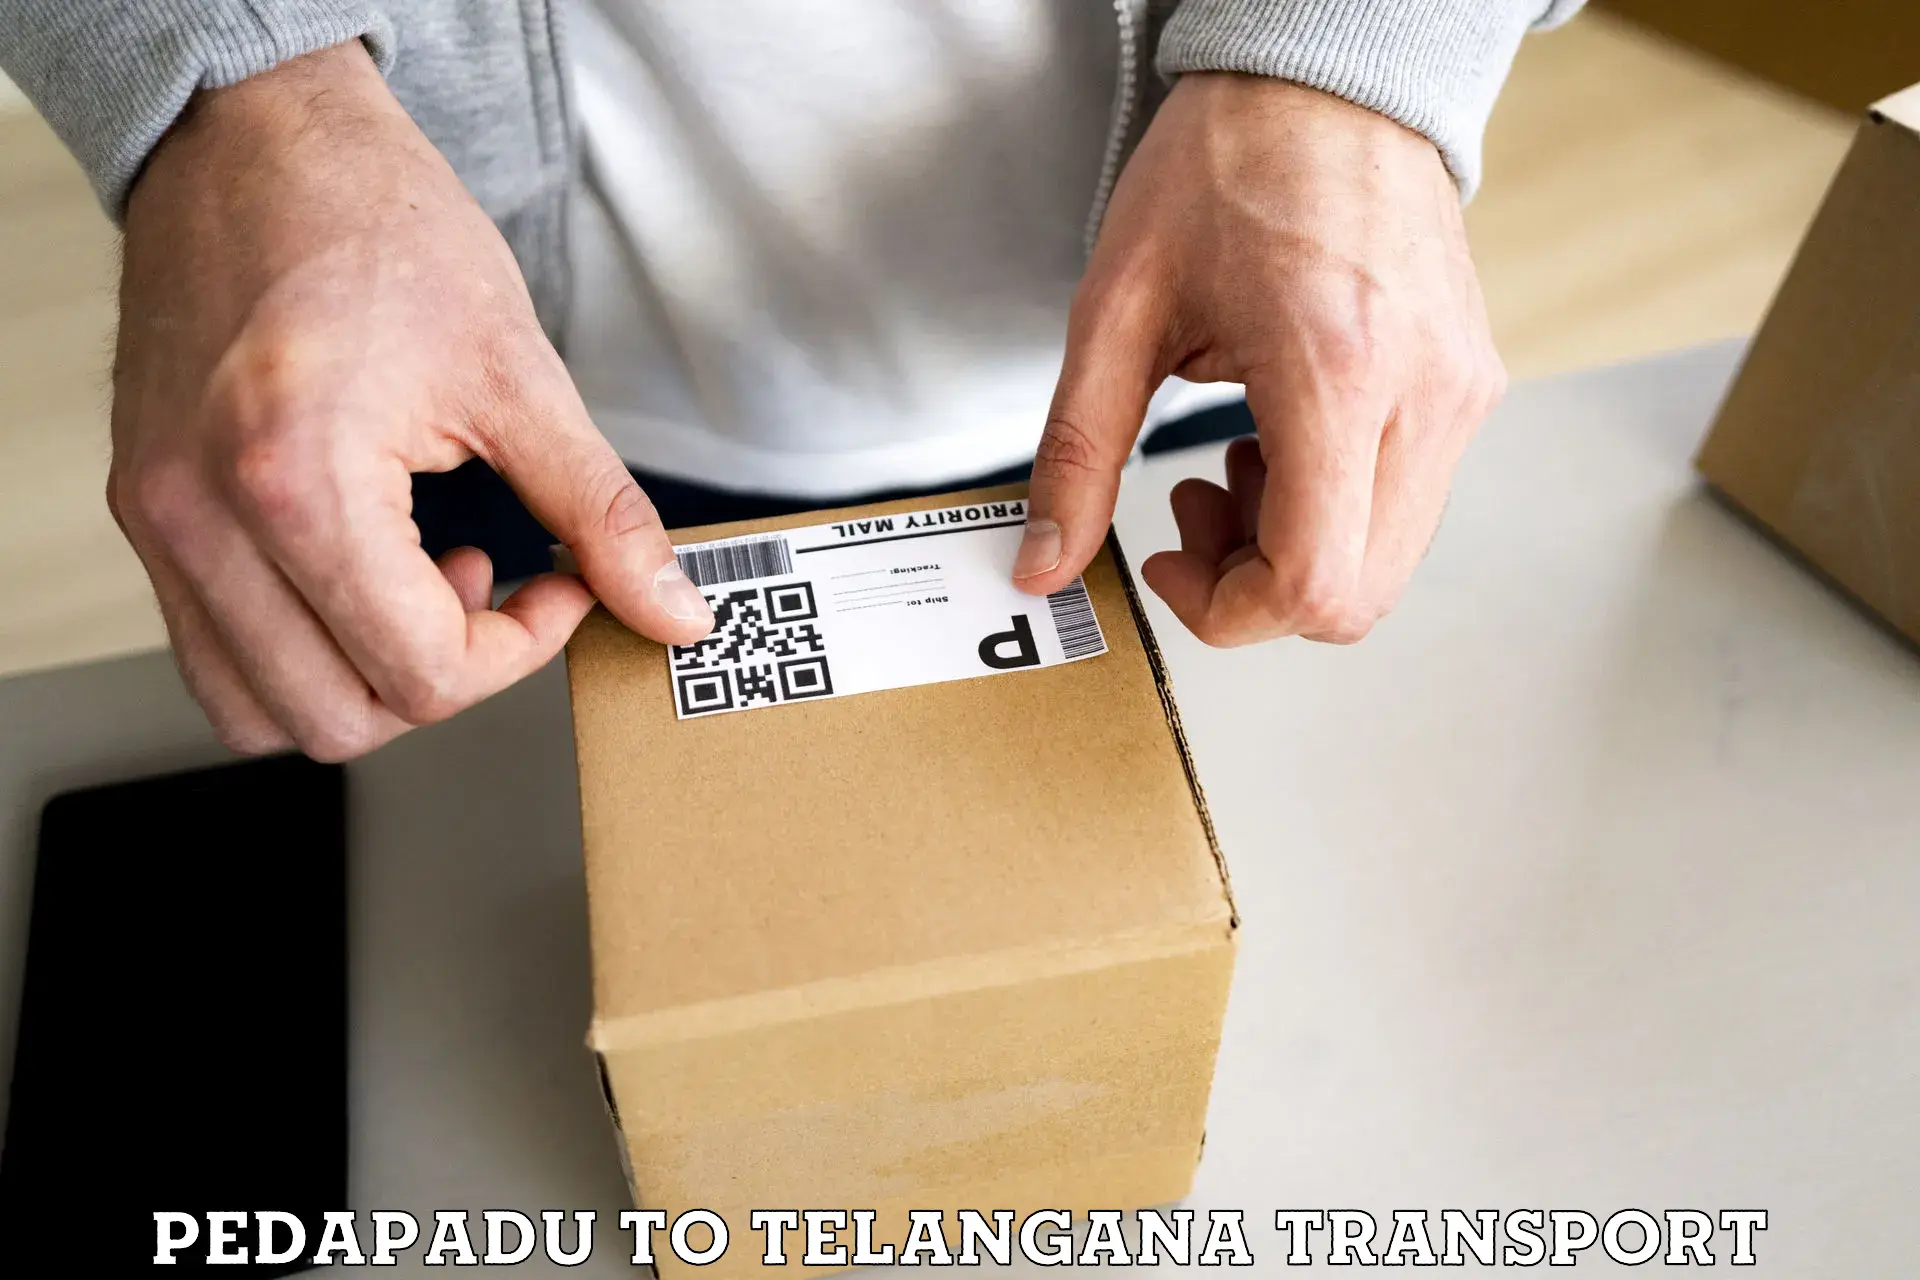 Container transportation services Pedapadu to Telangana